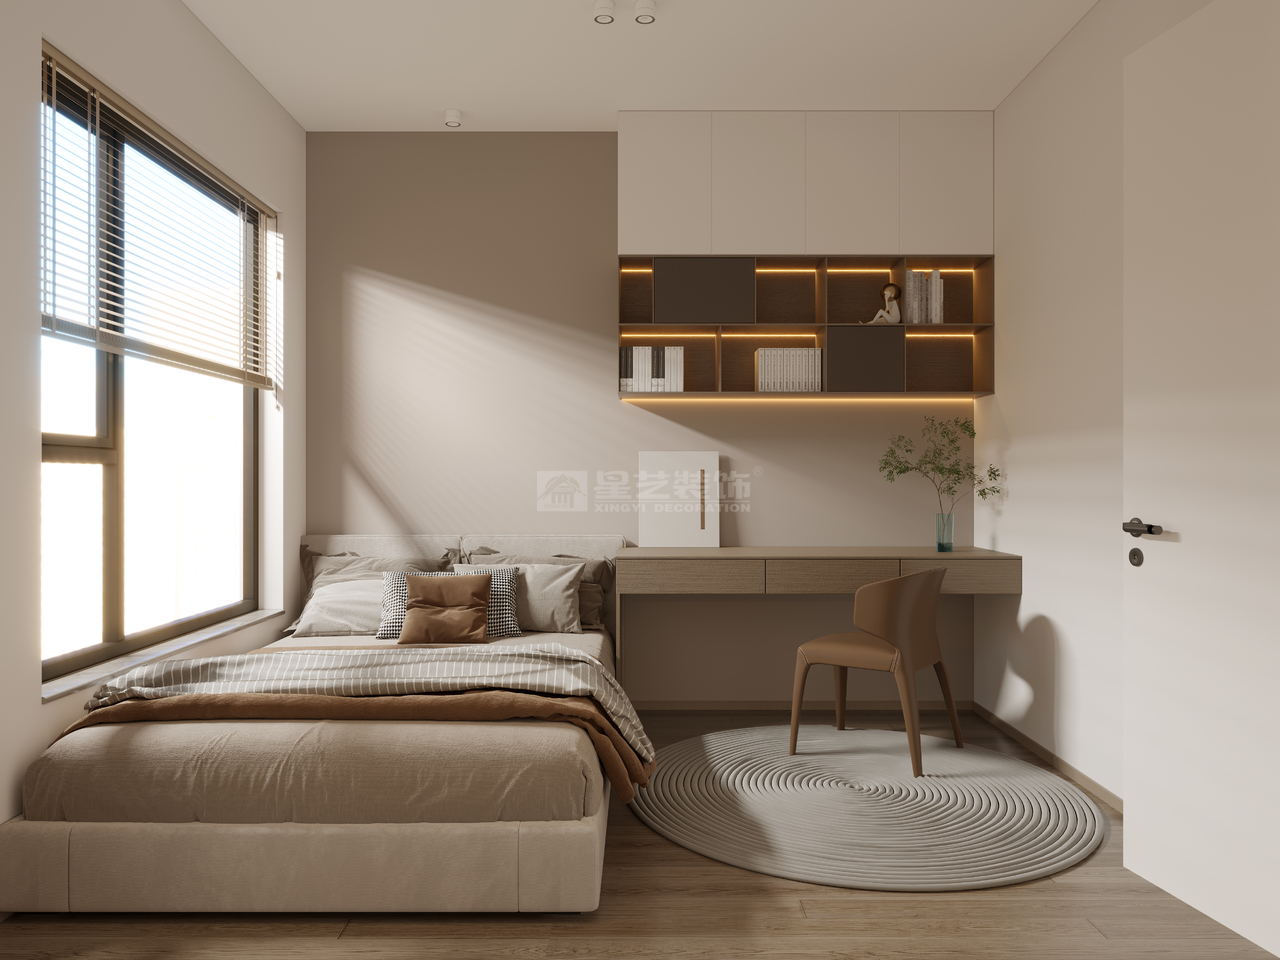 次卧延续纯粹的色调和自然舒适的氛围，以功能载体上的连接性扩容空间视觉感，书桌兼具床头柜功能与床头靠背一线生成，营造干净舒适的休息空间。